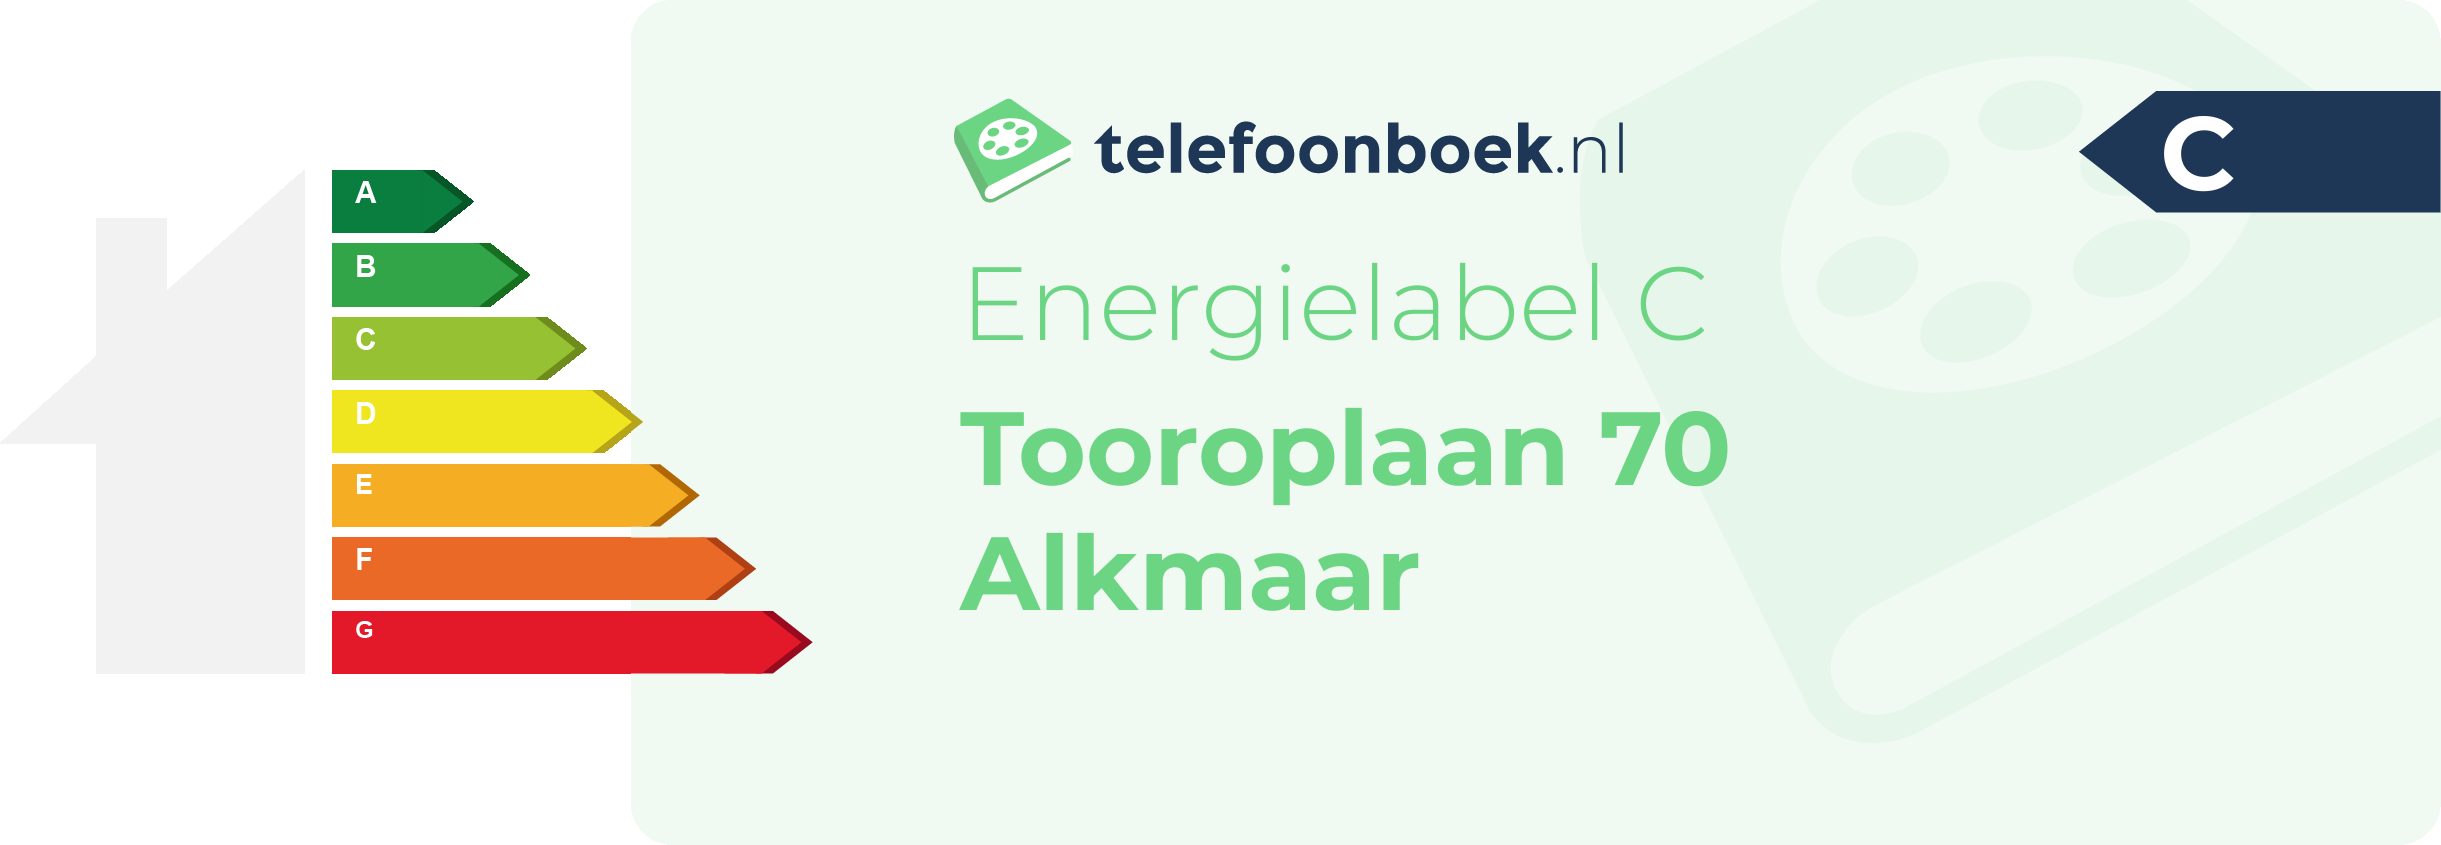 Energielabel Tooroplaan 70 Alkmaar